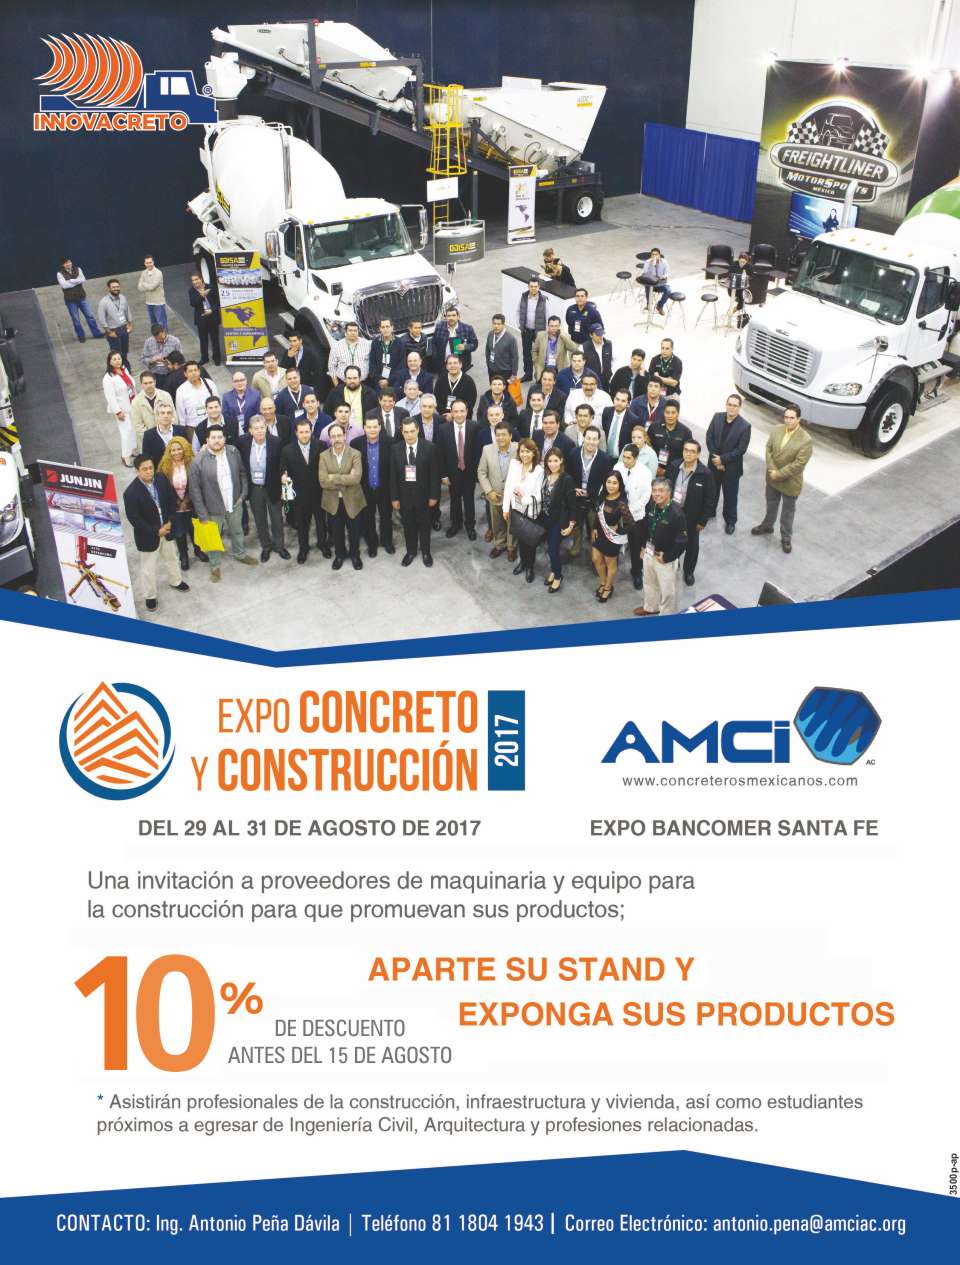 EXPO CONCRETO AMCI en expo Bancomer Santa Fe del 29 al 31 de Agosto 2017  CONGRESO AMCI  EXPO CONCRETO  ciudad de mexico